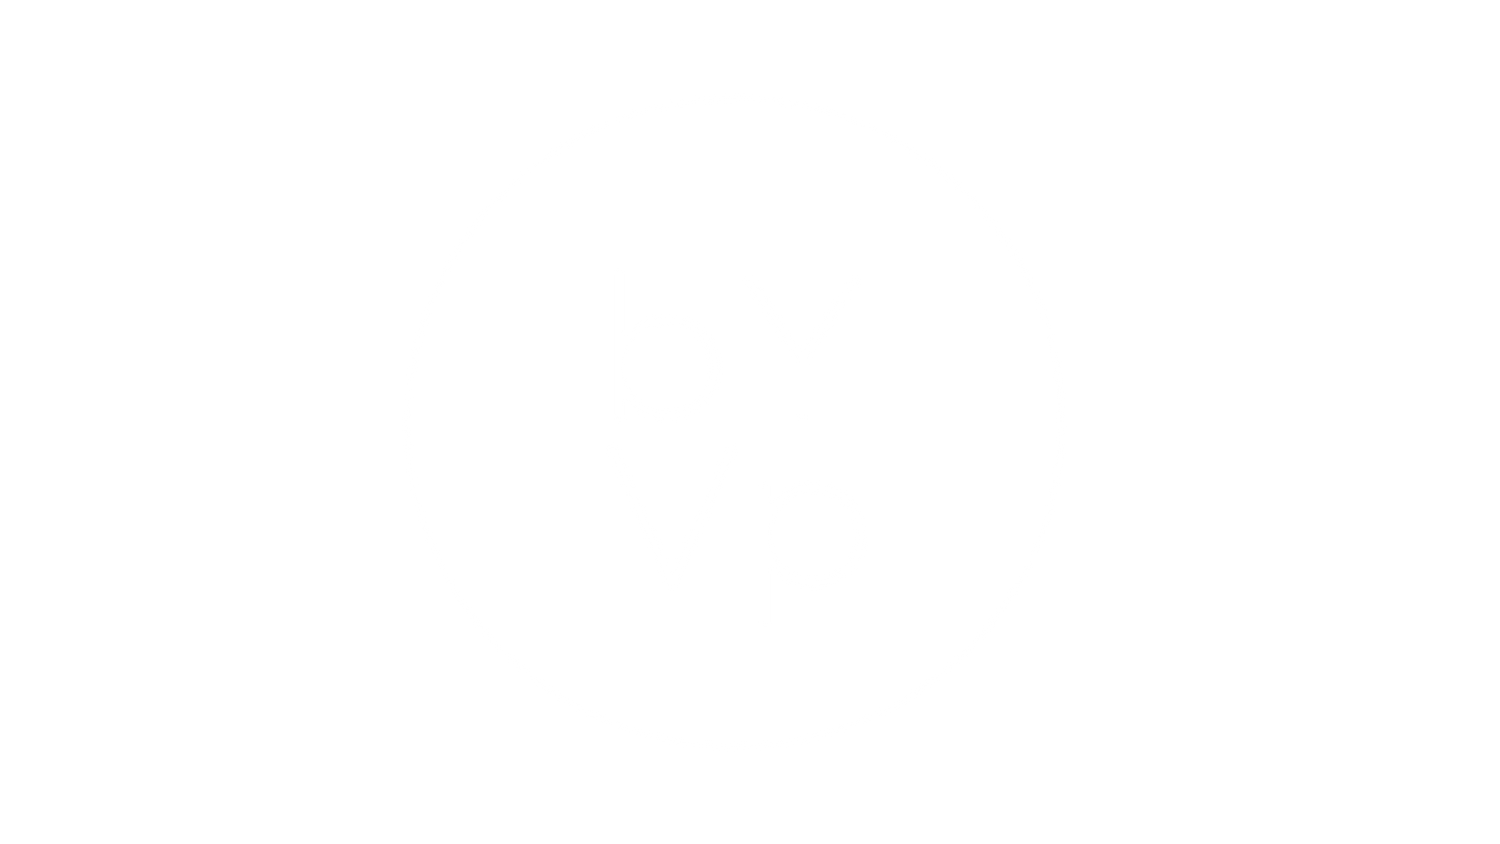 Immagine logo ByVP, bianco su sfondo scuro